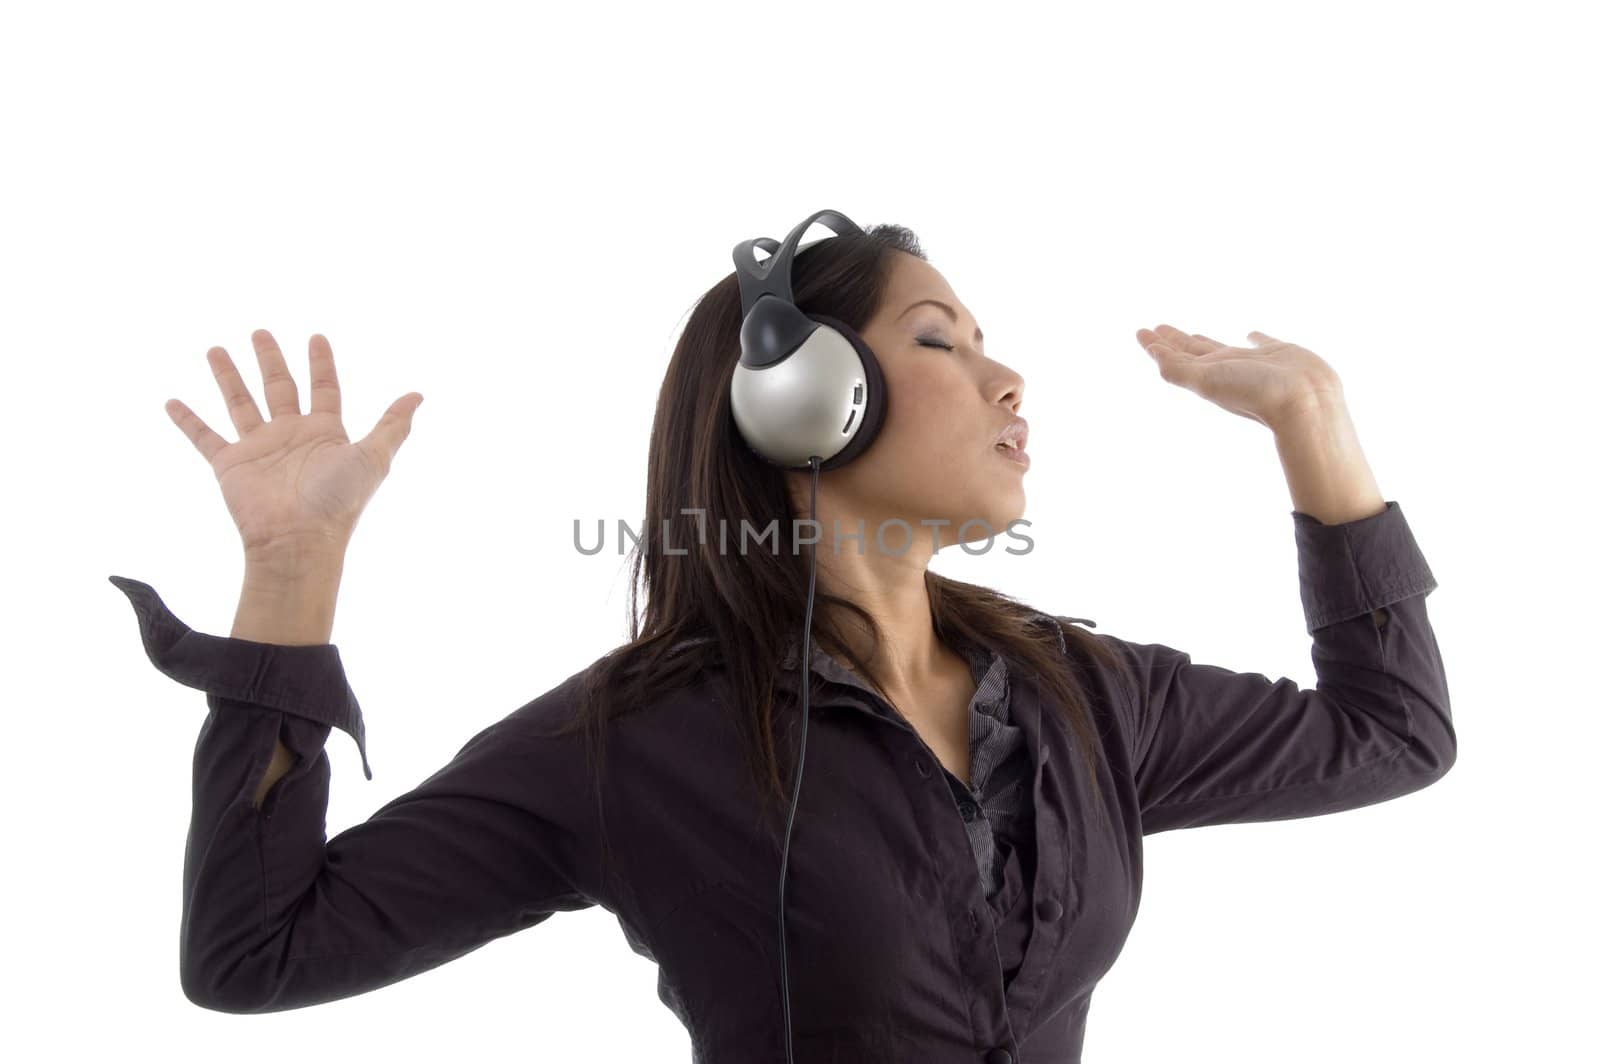 female enjoying music on headphone by imagerymajestic